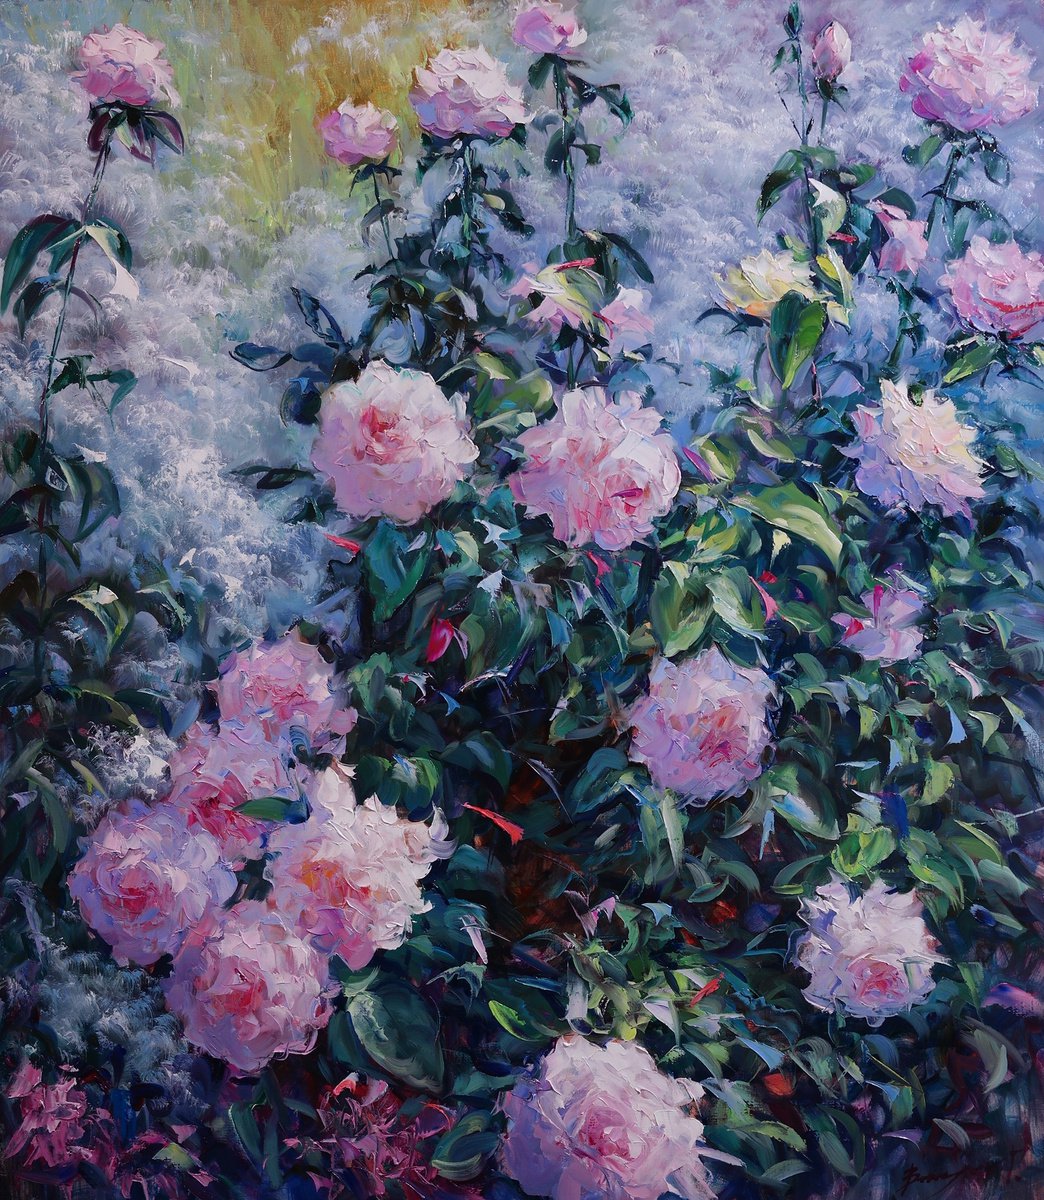 Rose bush by Gennady Vylusk